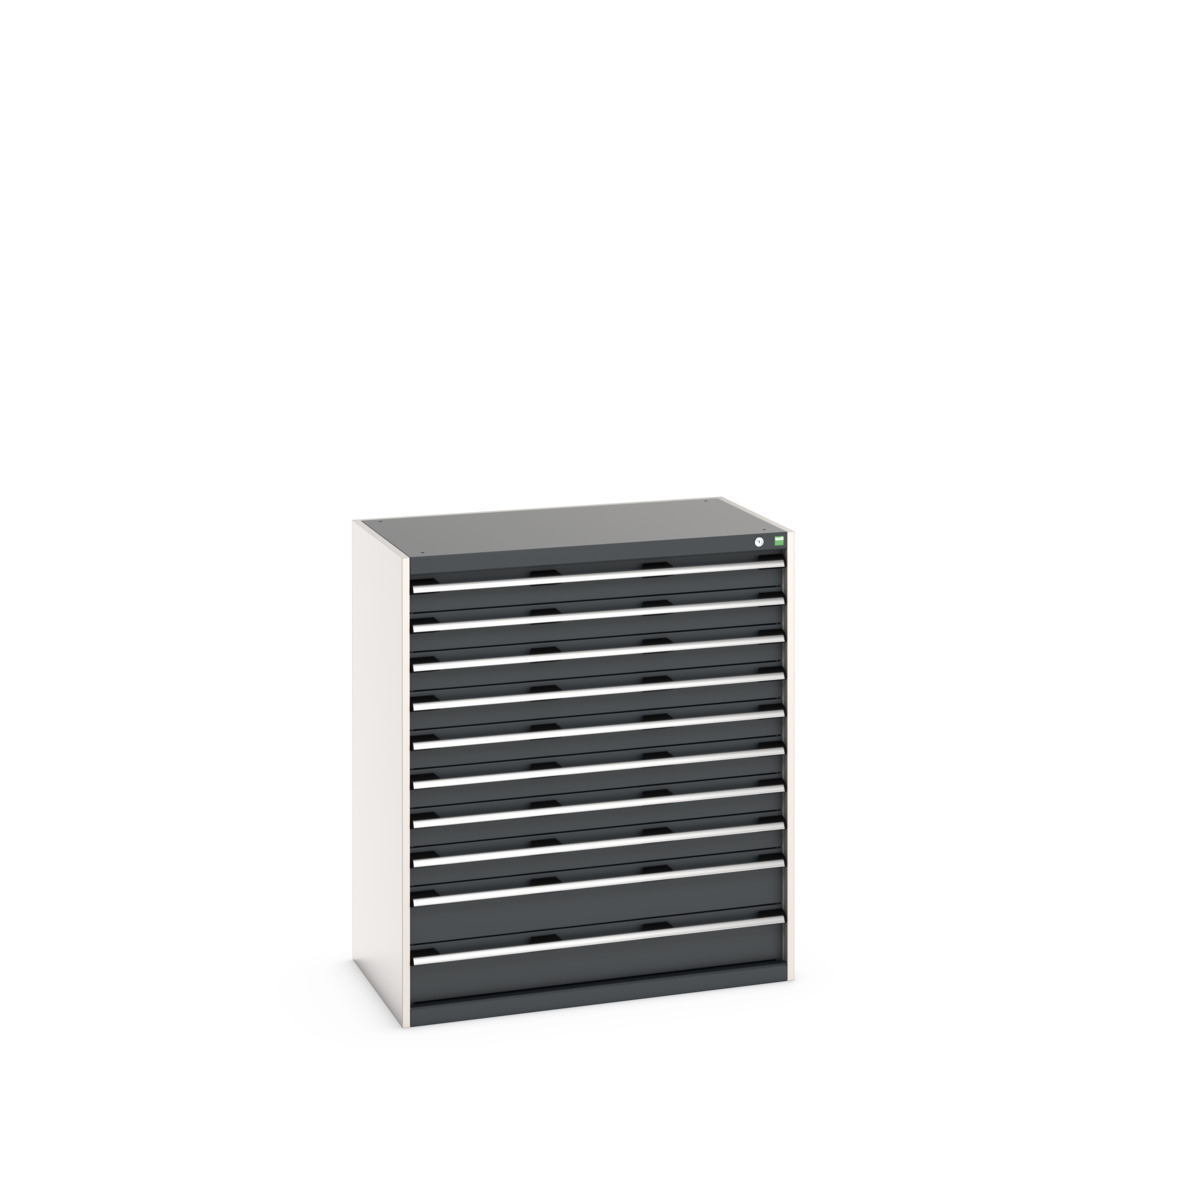 40021041.19V - cubio drawer cabinet